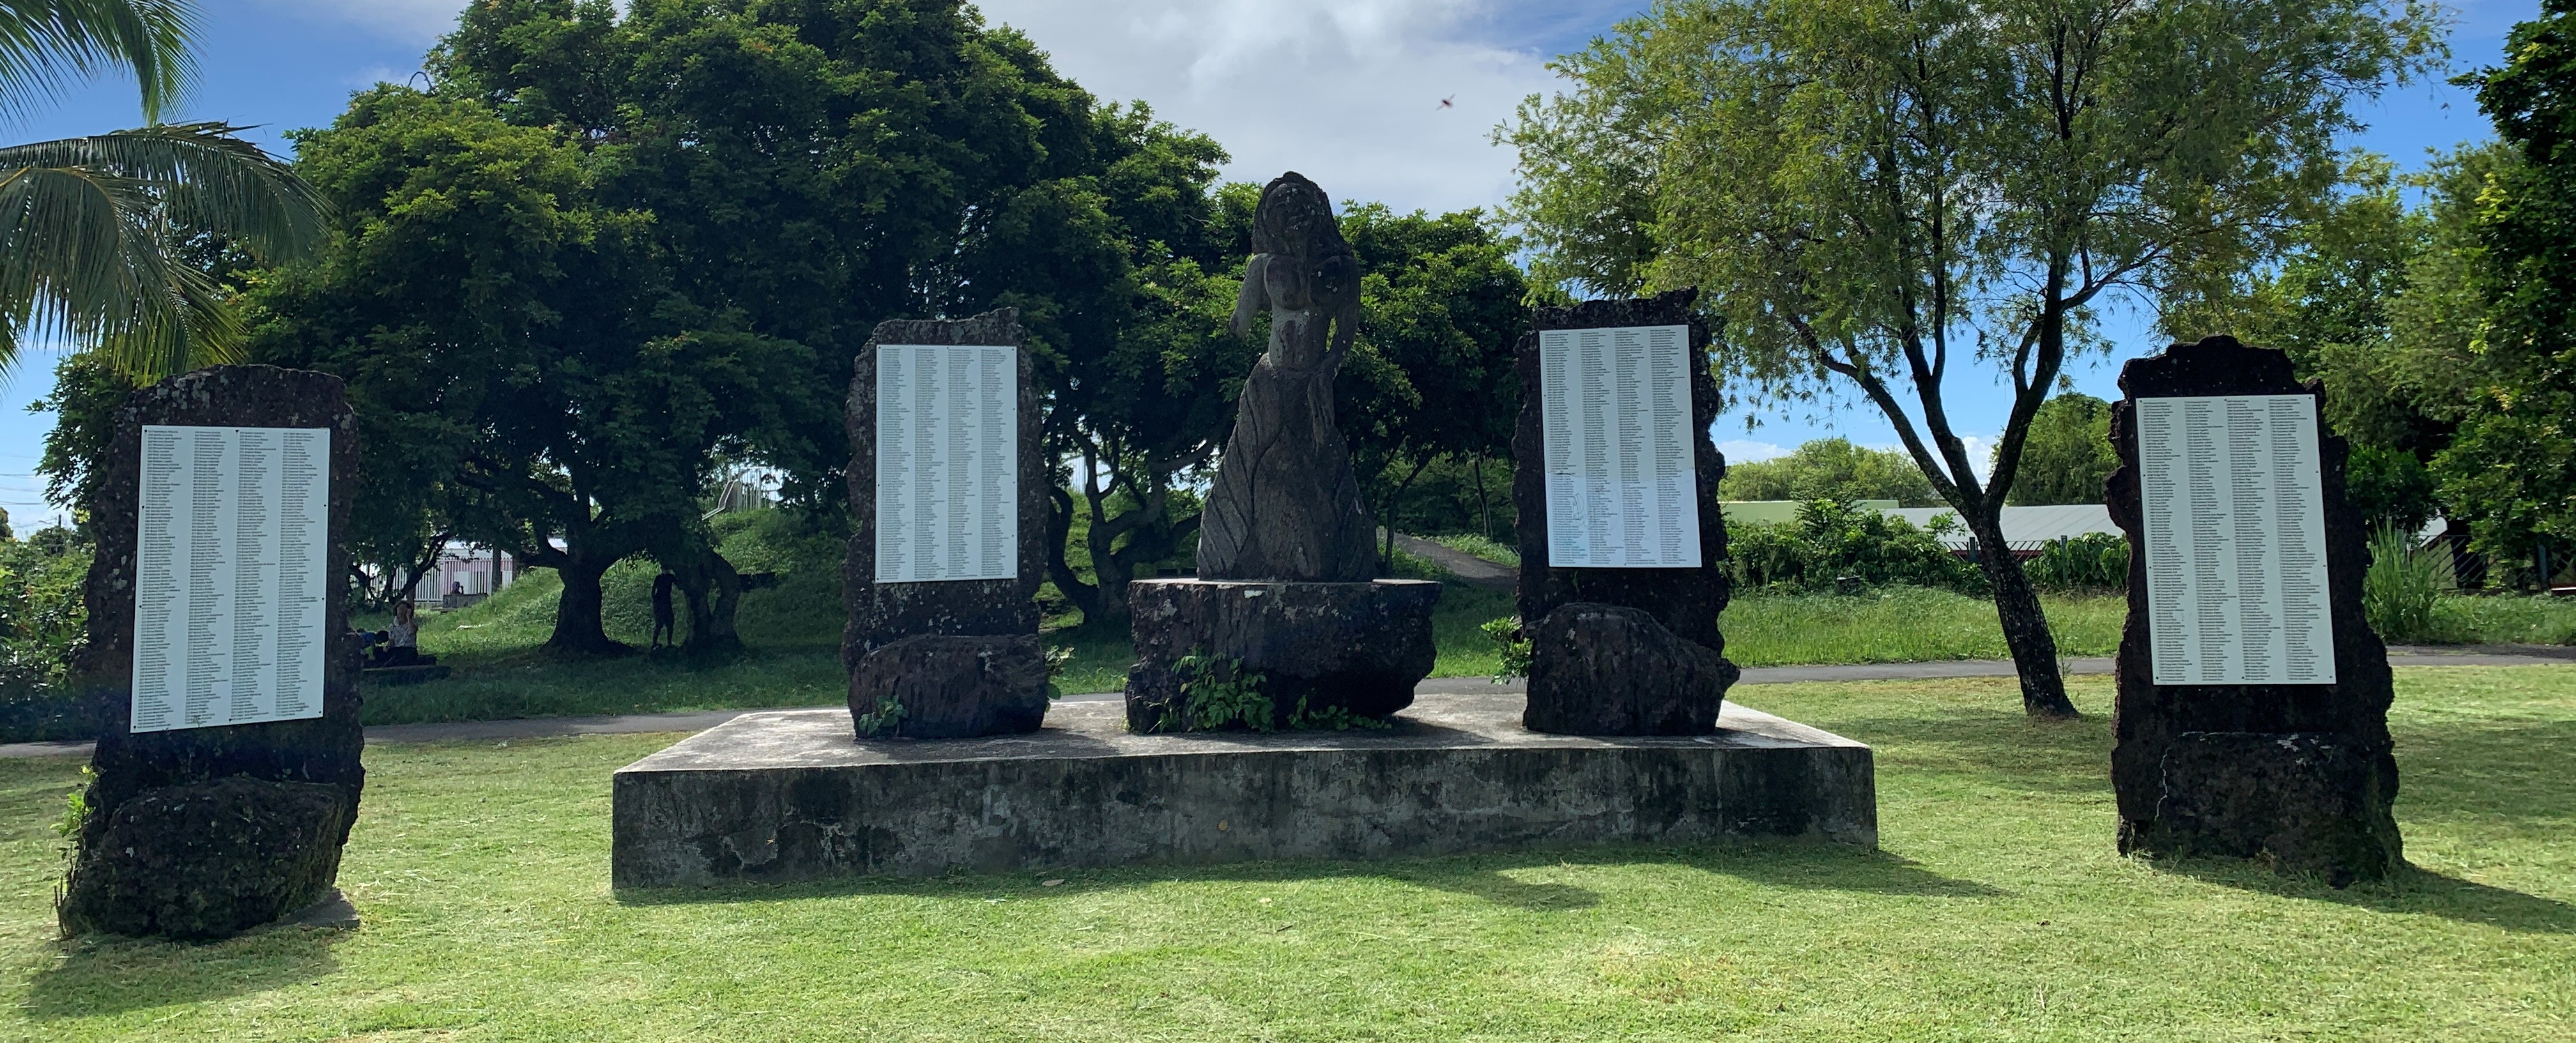 L’association Kartyé lib souhaite faire découvrir l'histoire de Toussaint Louverture aux Réunionnais